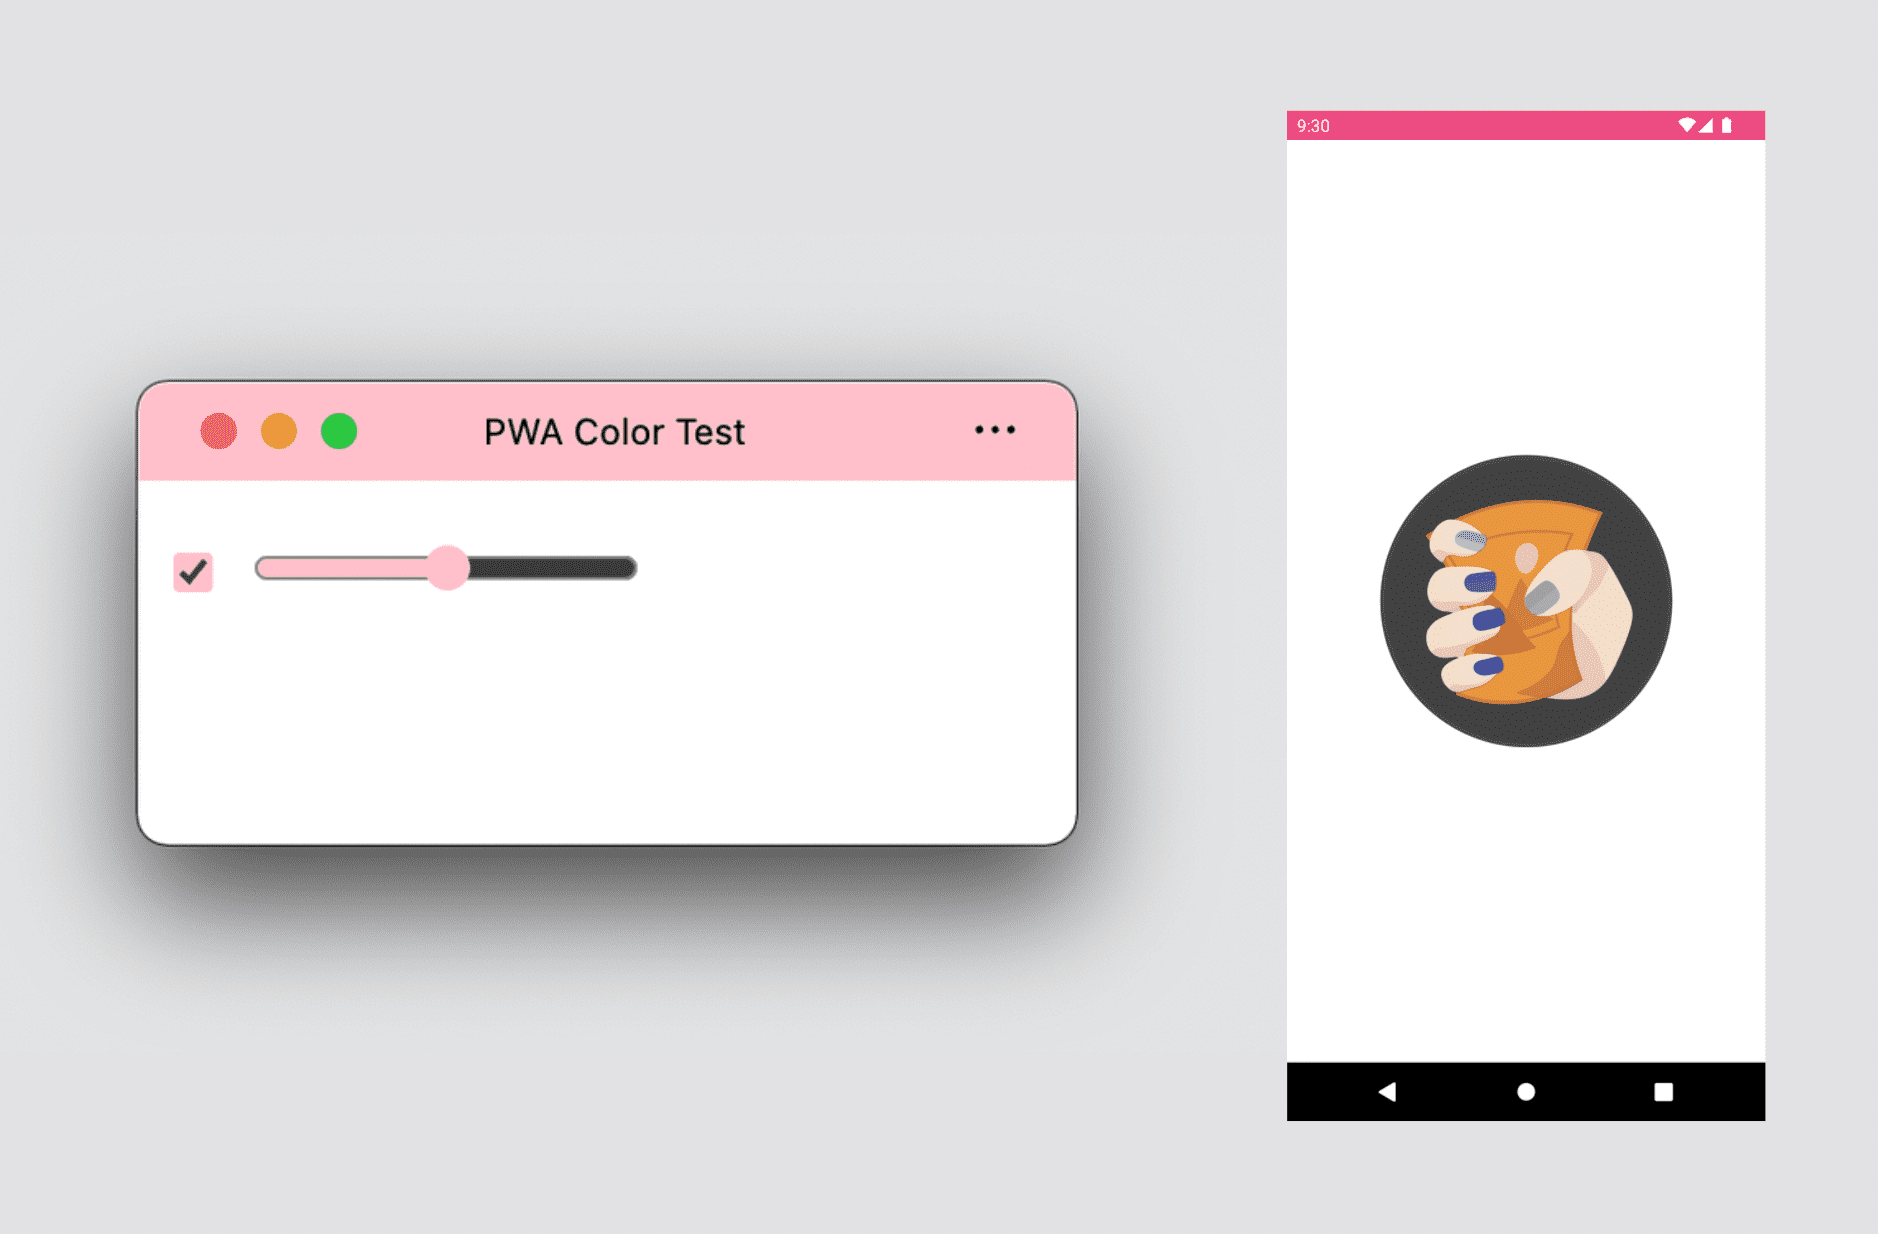 אפליקציית PWA למחשב שמציגה צבעי עיצוב וצבע משני, ומסך פתיחה ל-PWA ל-Android שמוצגים בו צבעי עיצוב ורקע.